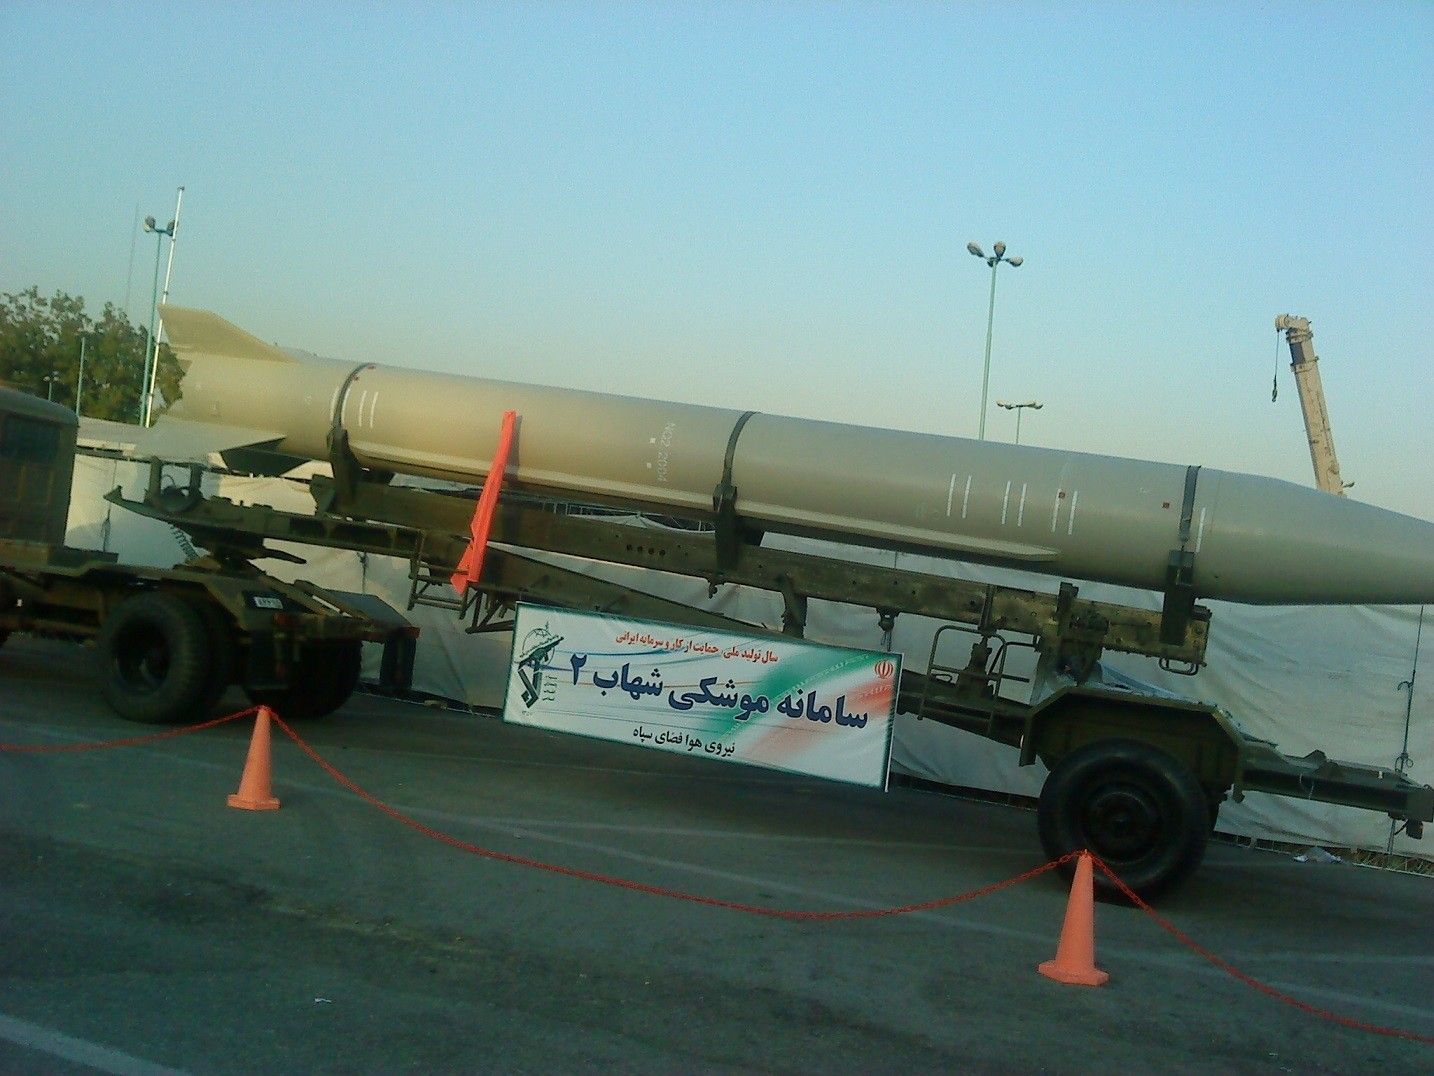 Jedna z wcześniejszych rakiet balistycznych Iranu, Shahab-2. Fot. Vahid alpha/Wikipedia Commons CC BY 3.0